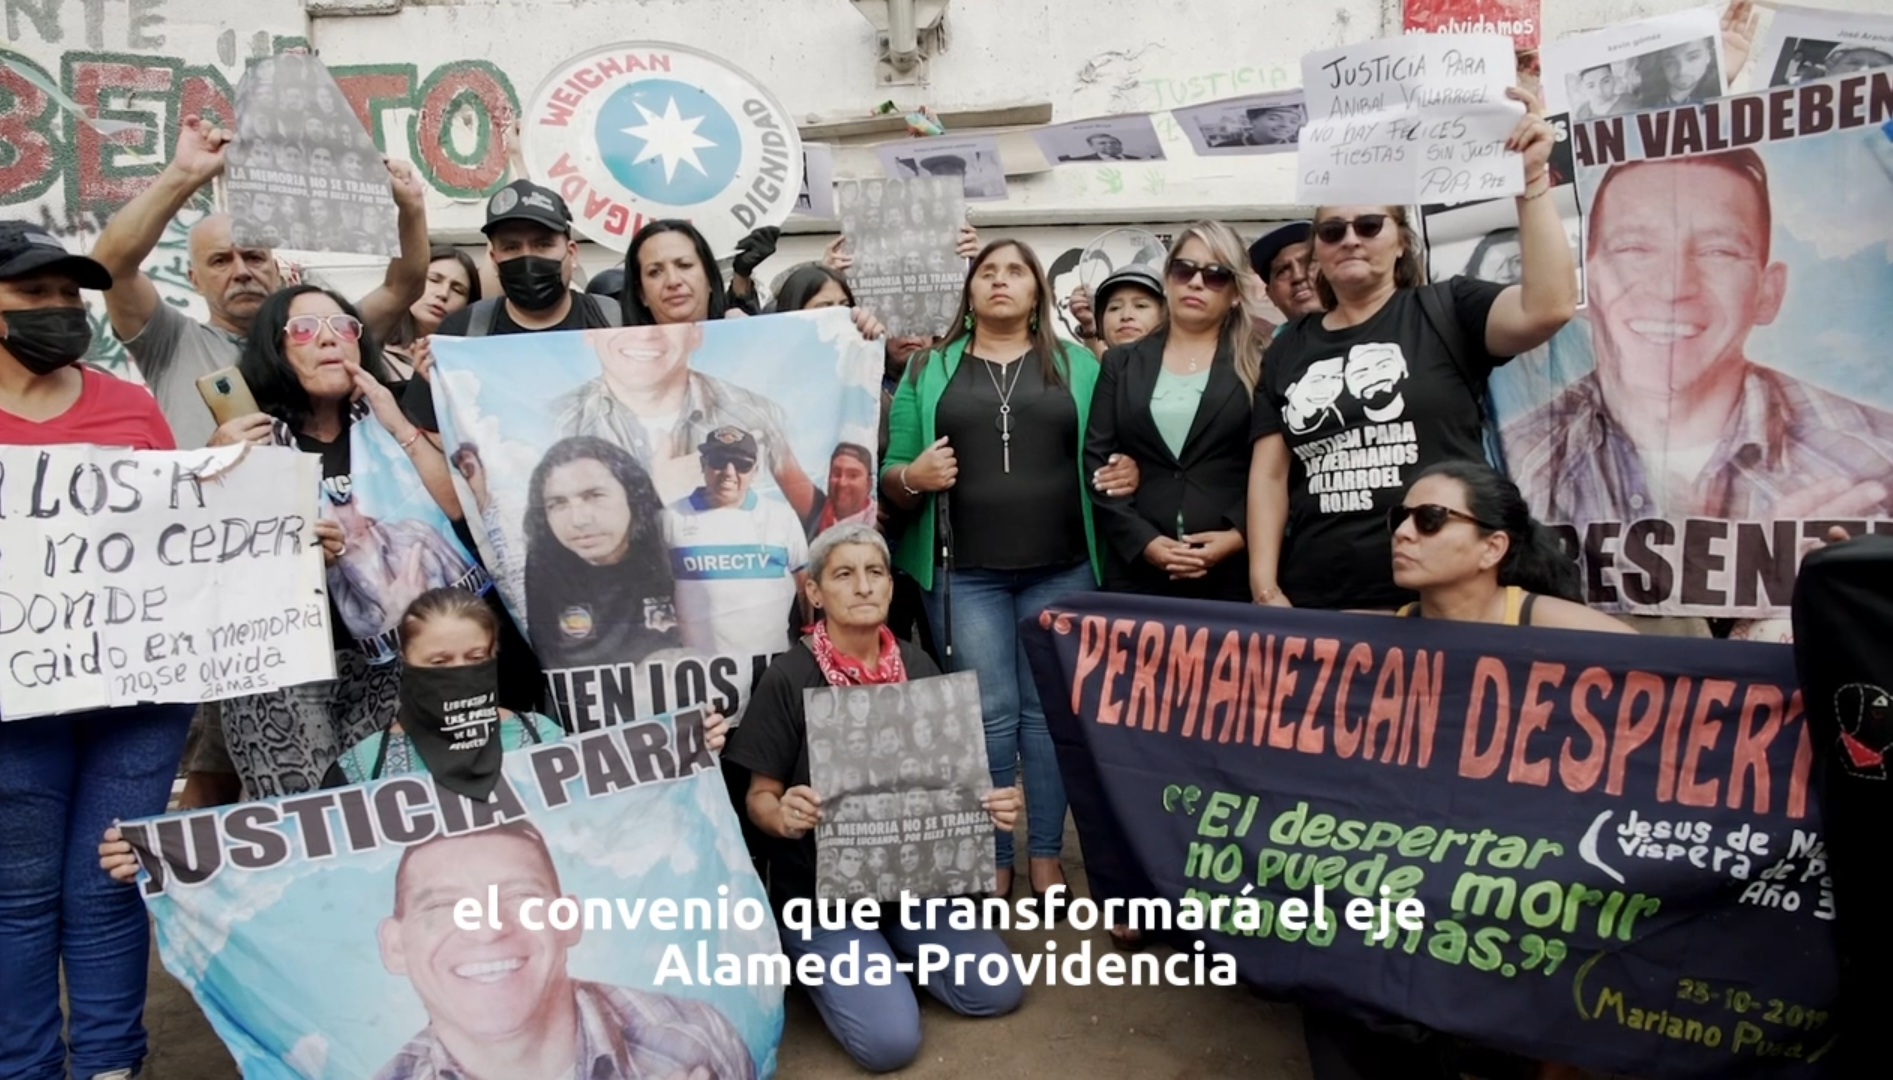 Senadora Fabiola Campillai, familiares y sobrevivientes de violaciones a los DDHH critican convenio de transformación Alameda-Providencia